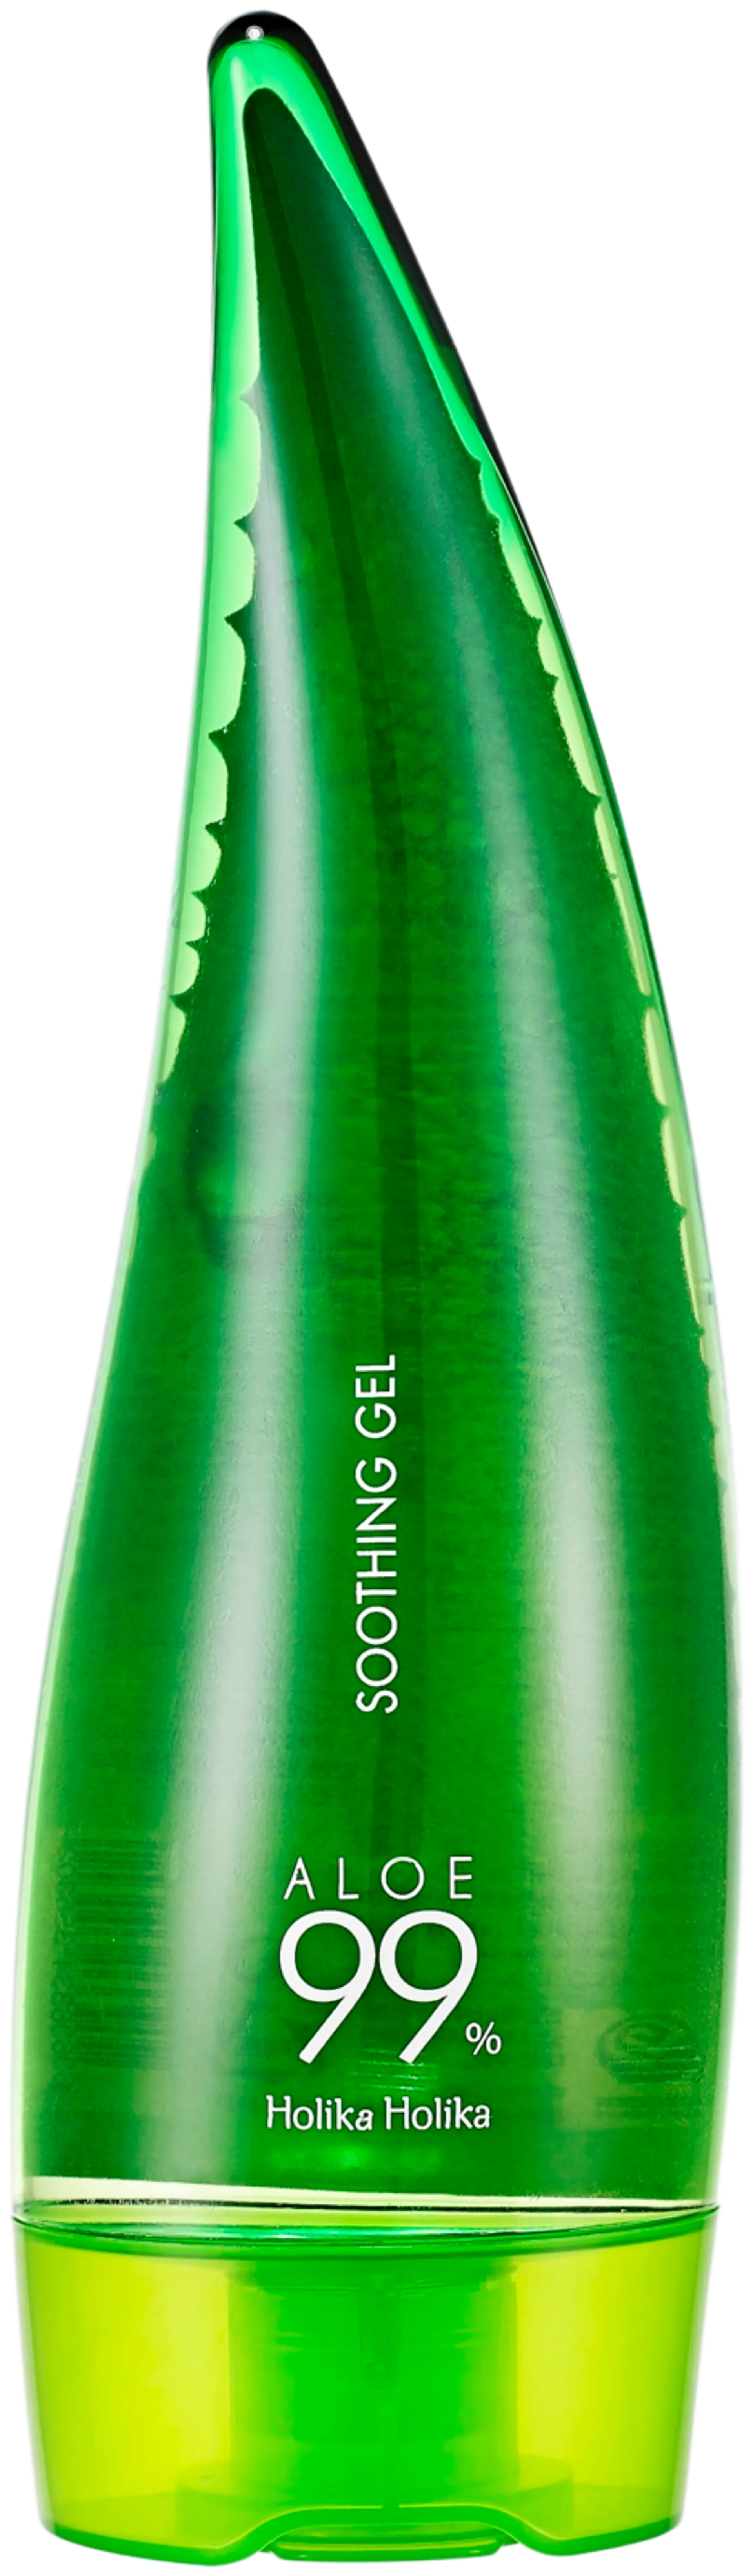 Holika Holika Aloe 99% Soothing Gel 250ml